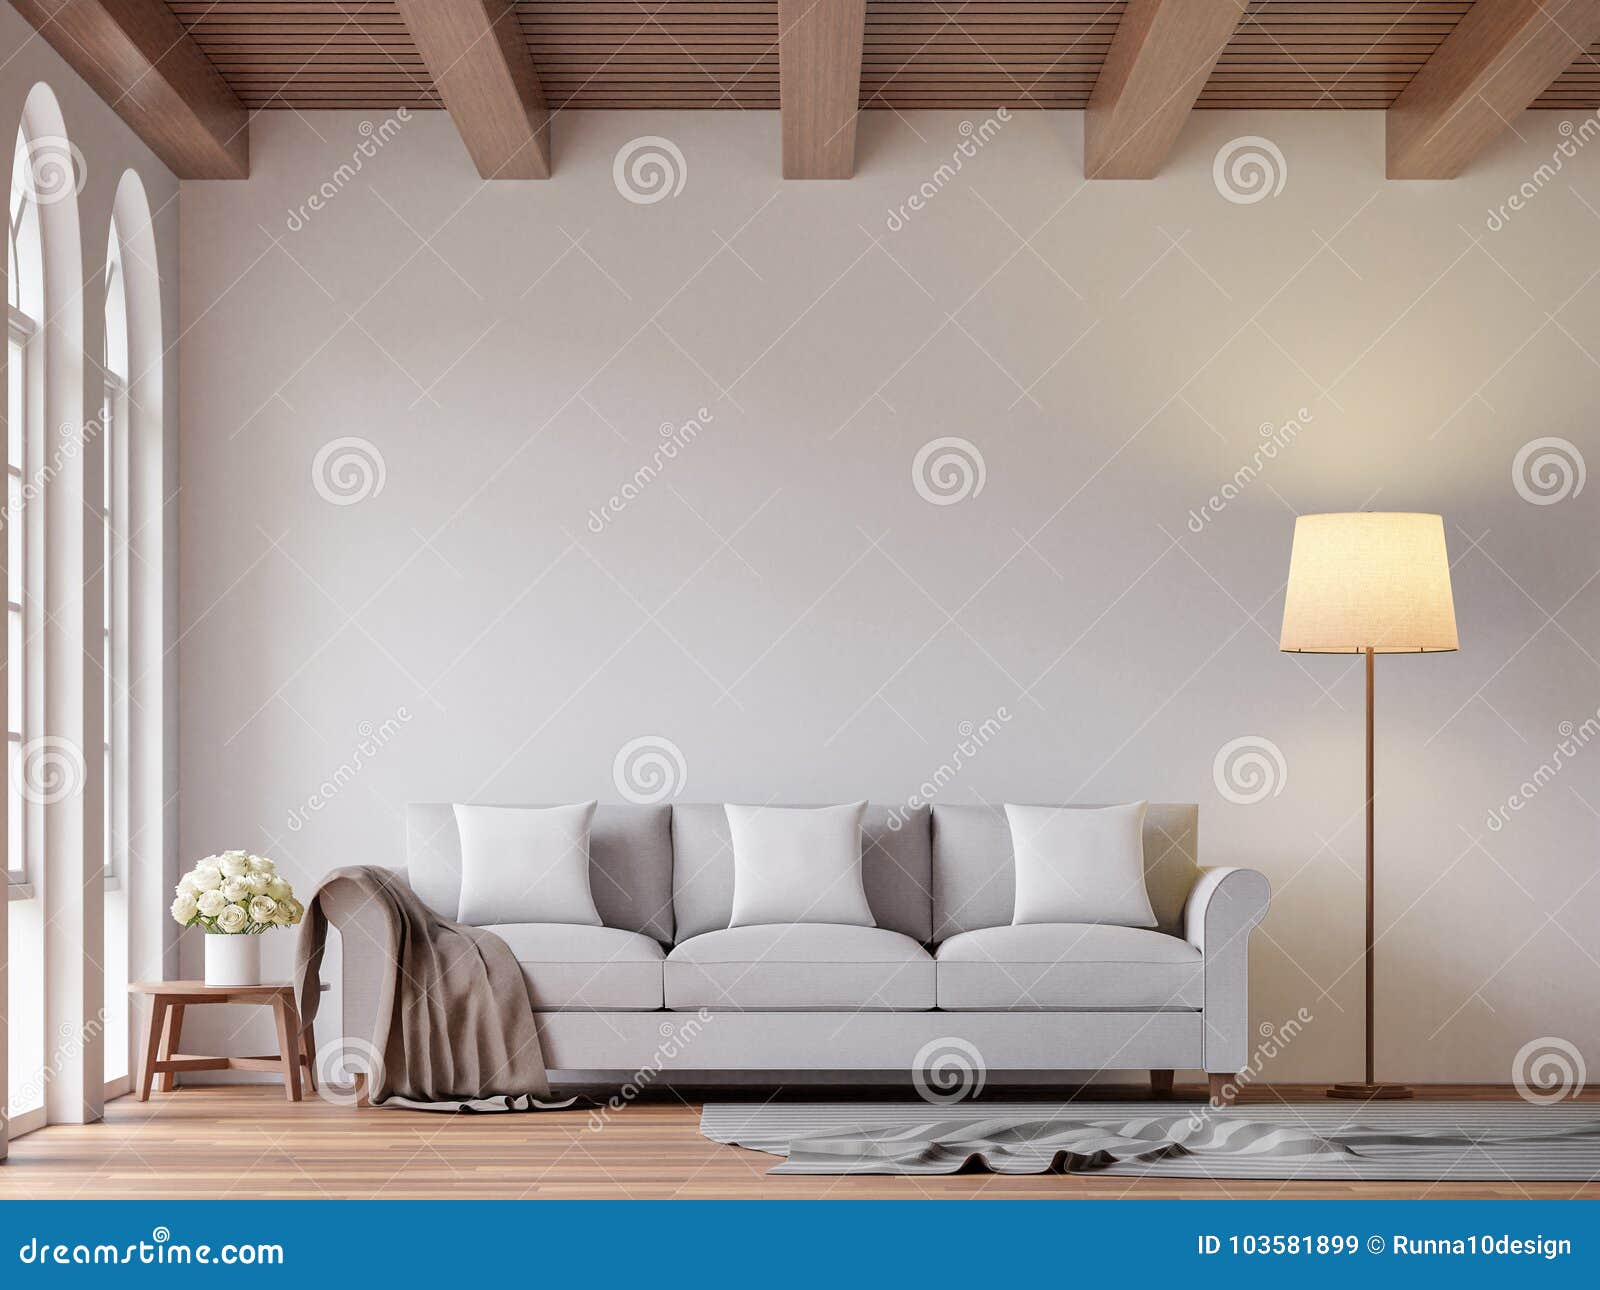 scandinavian living room 3d rendering image